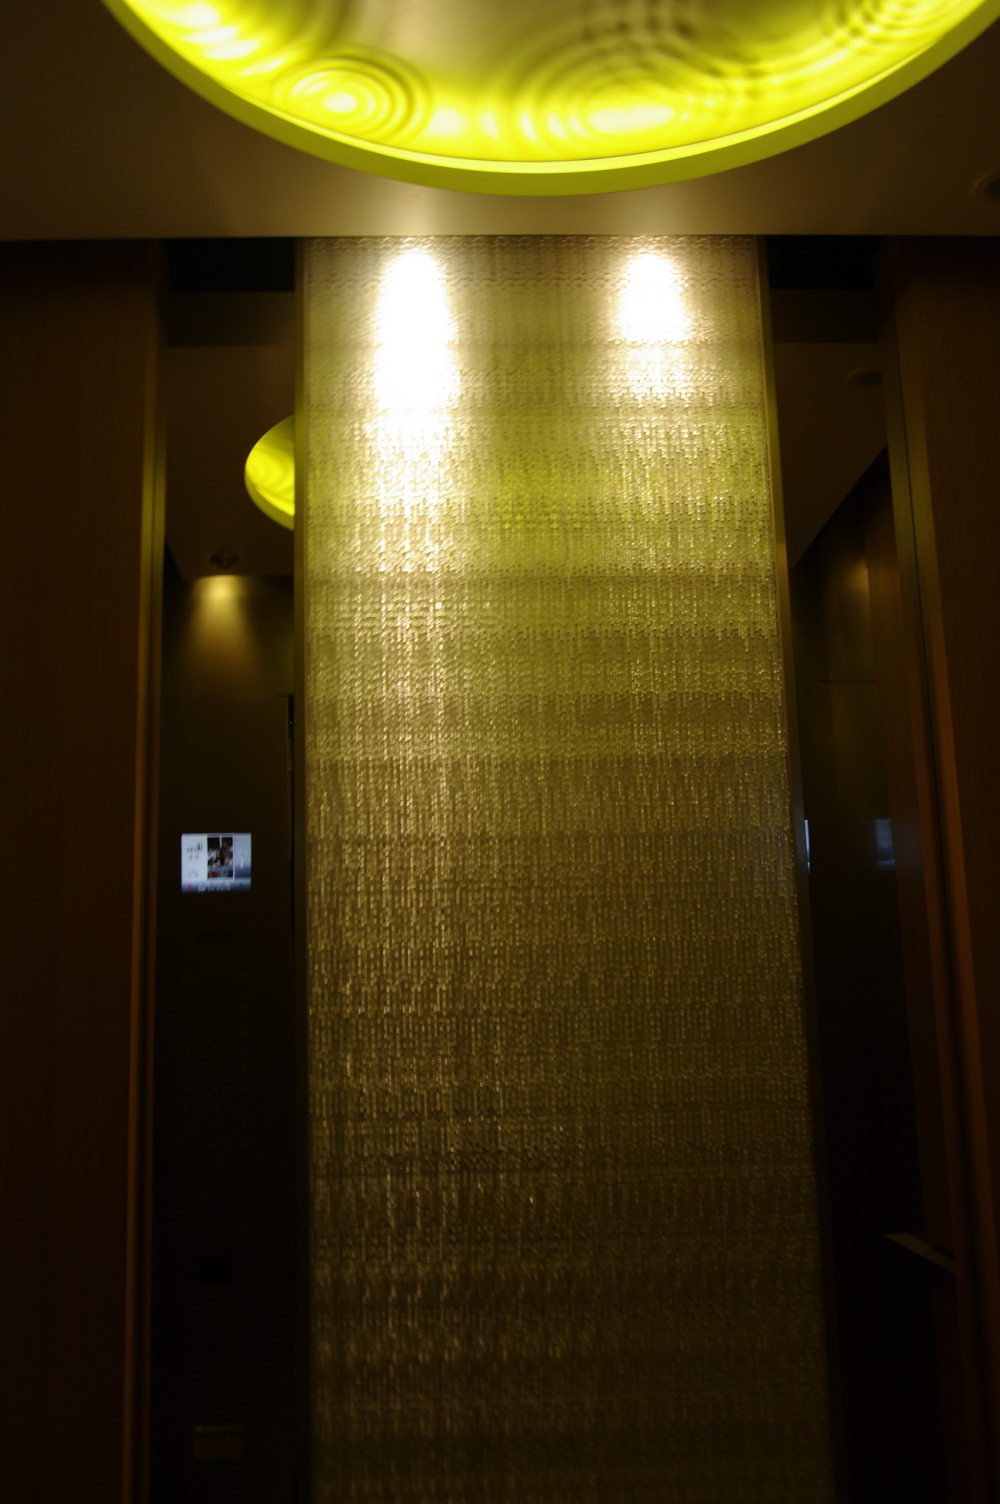 苏州晋合洲际Intercontinental酒店--2012.06.24第八页更新客房__IGP3781.JPG